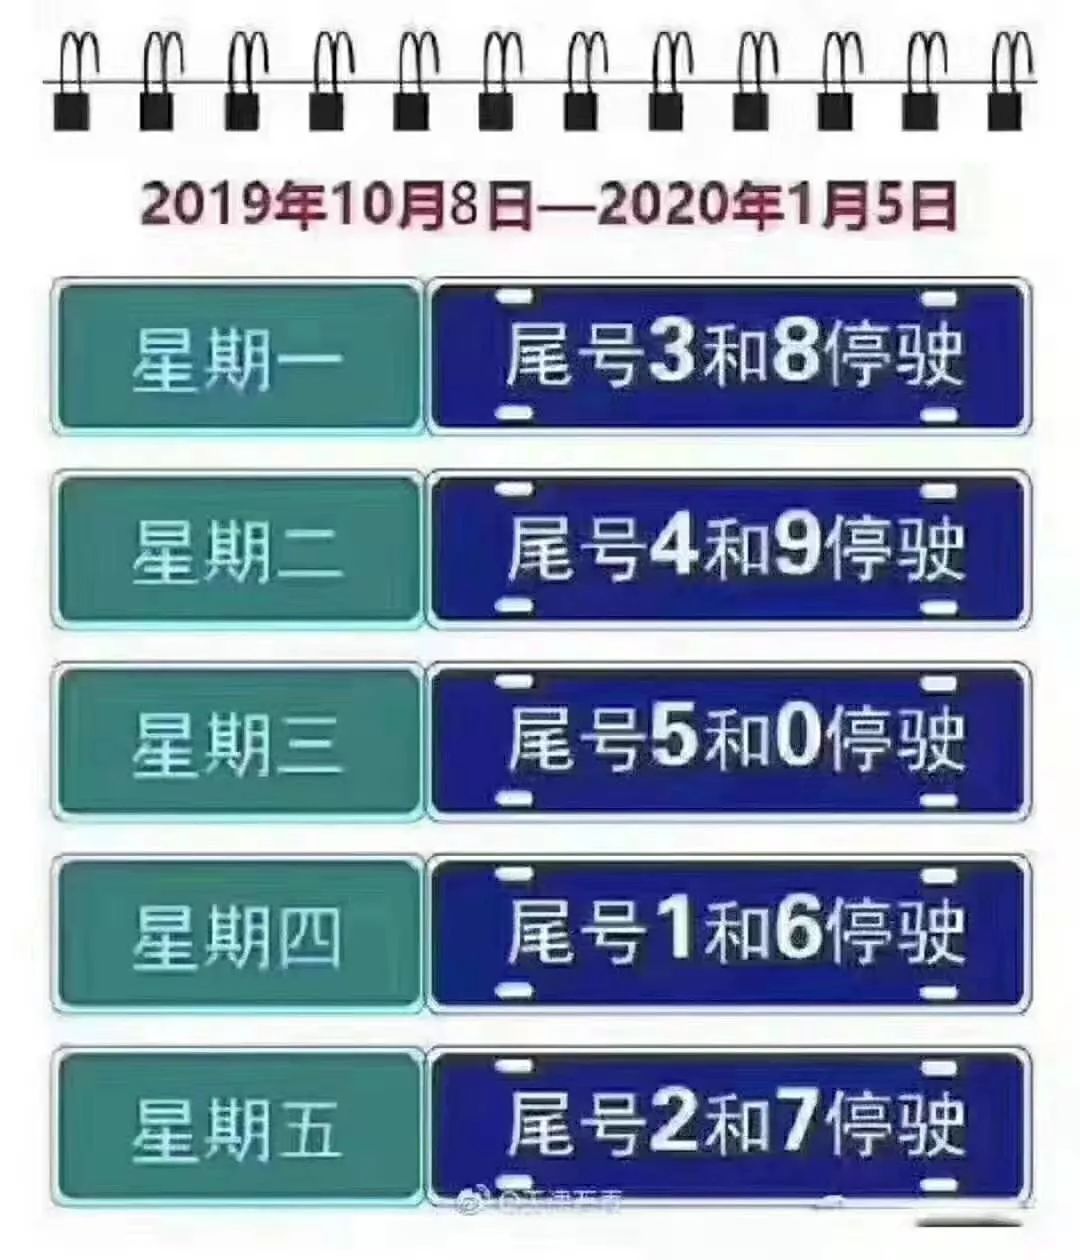 石家庄市:自2019年10月8日至2020年1月5日,星期一至星期五限行机动车